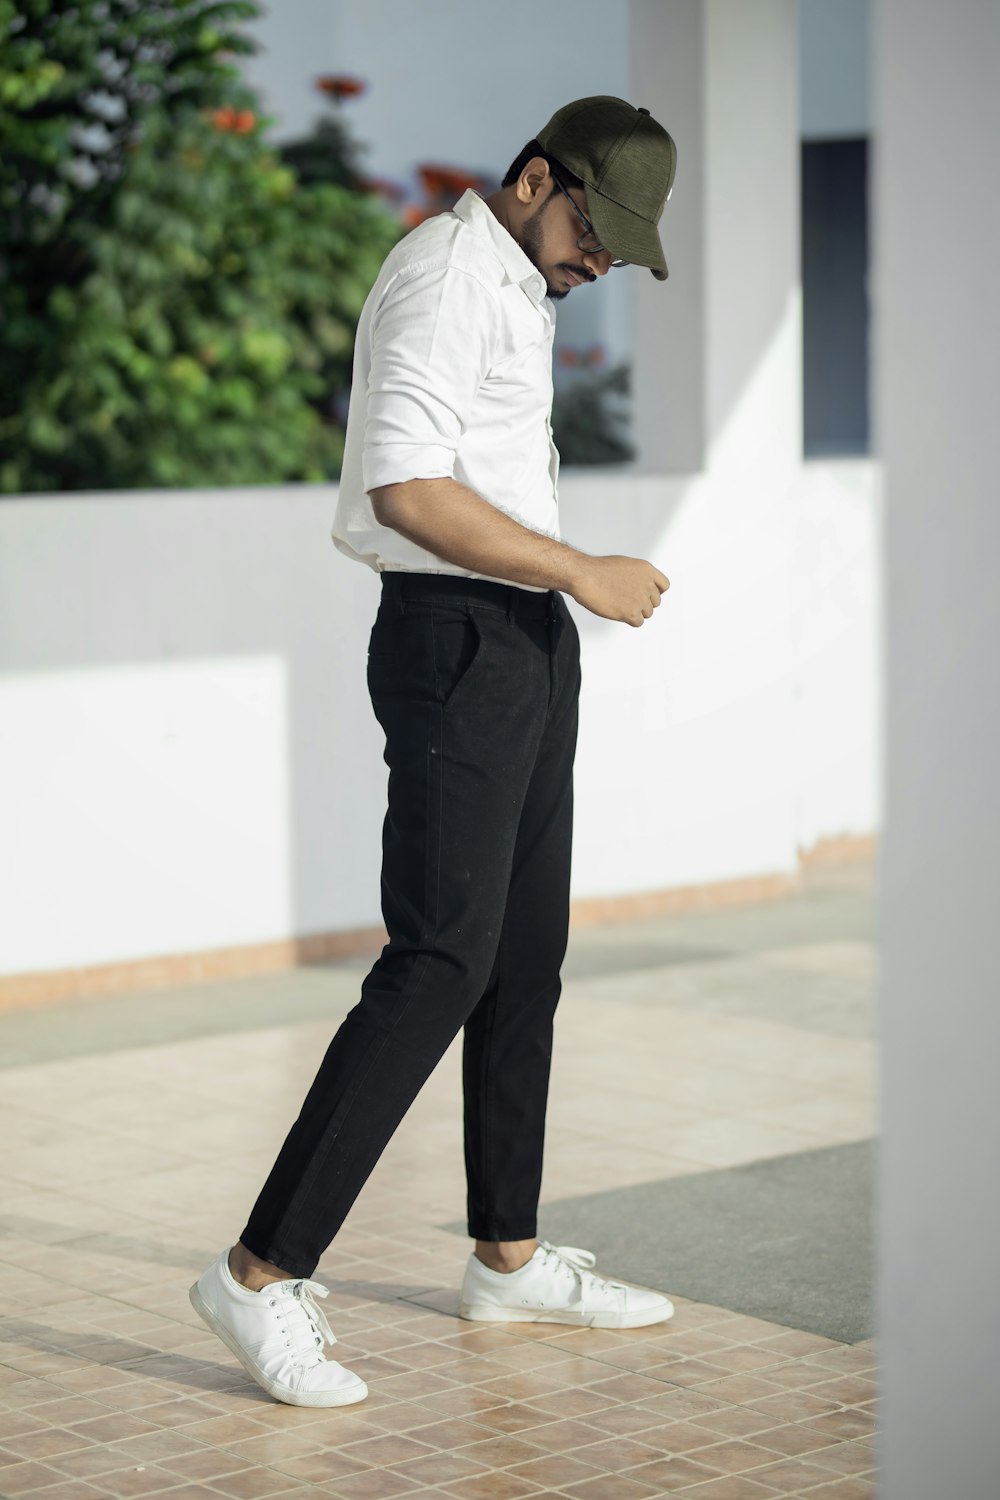 흰색 티셔츠와 검은 바지를 입은 남자가 흰색 바닥에 서 있다